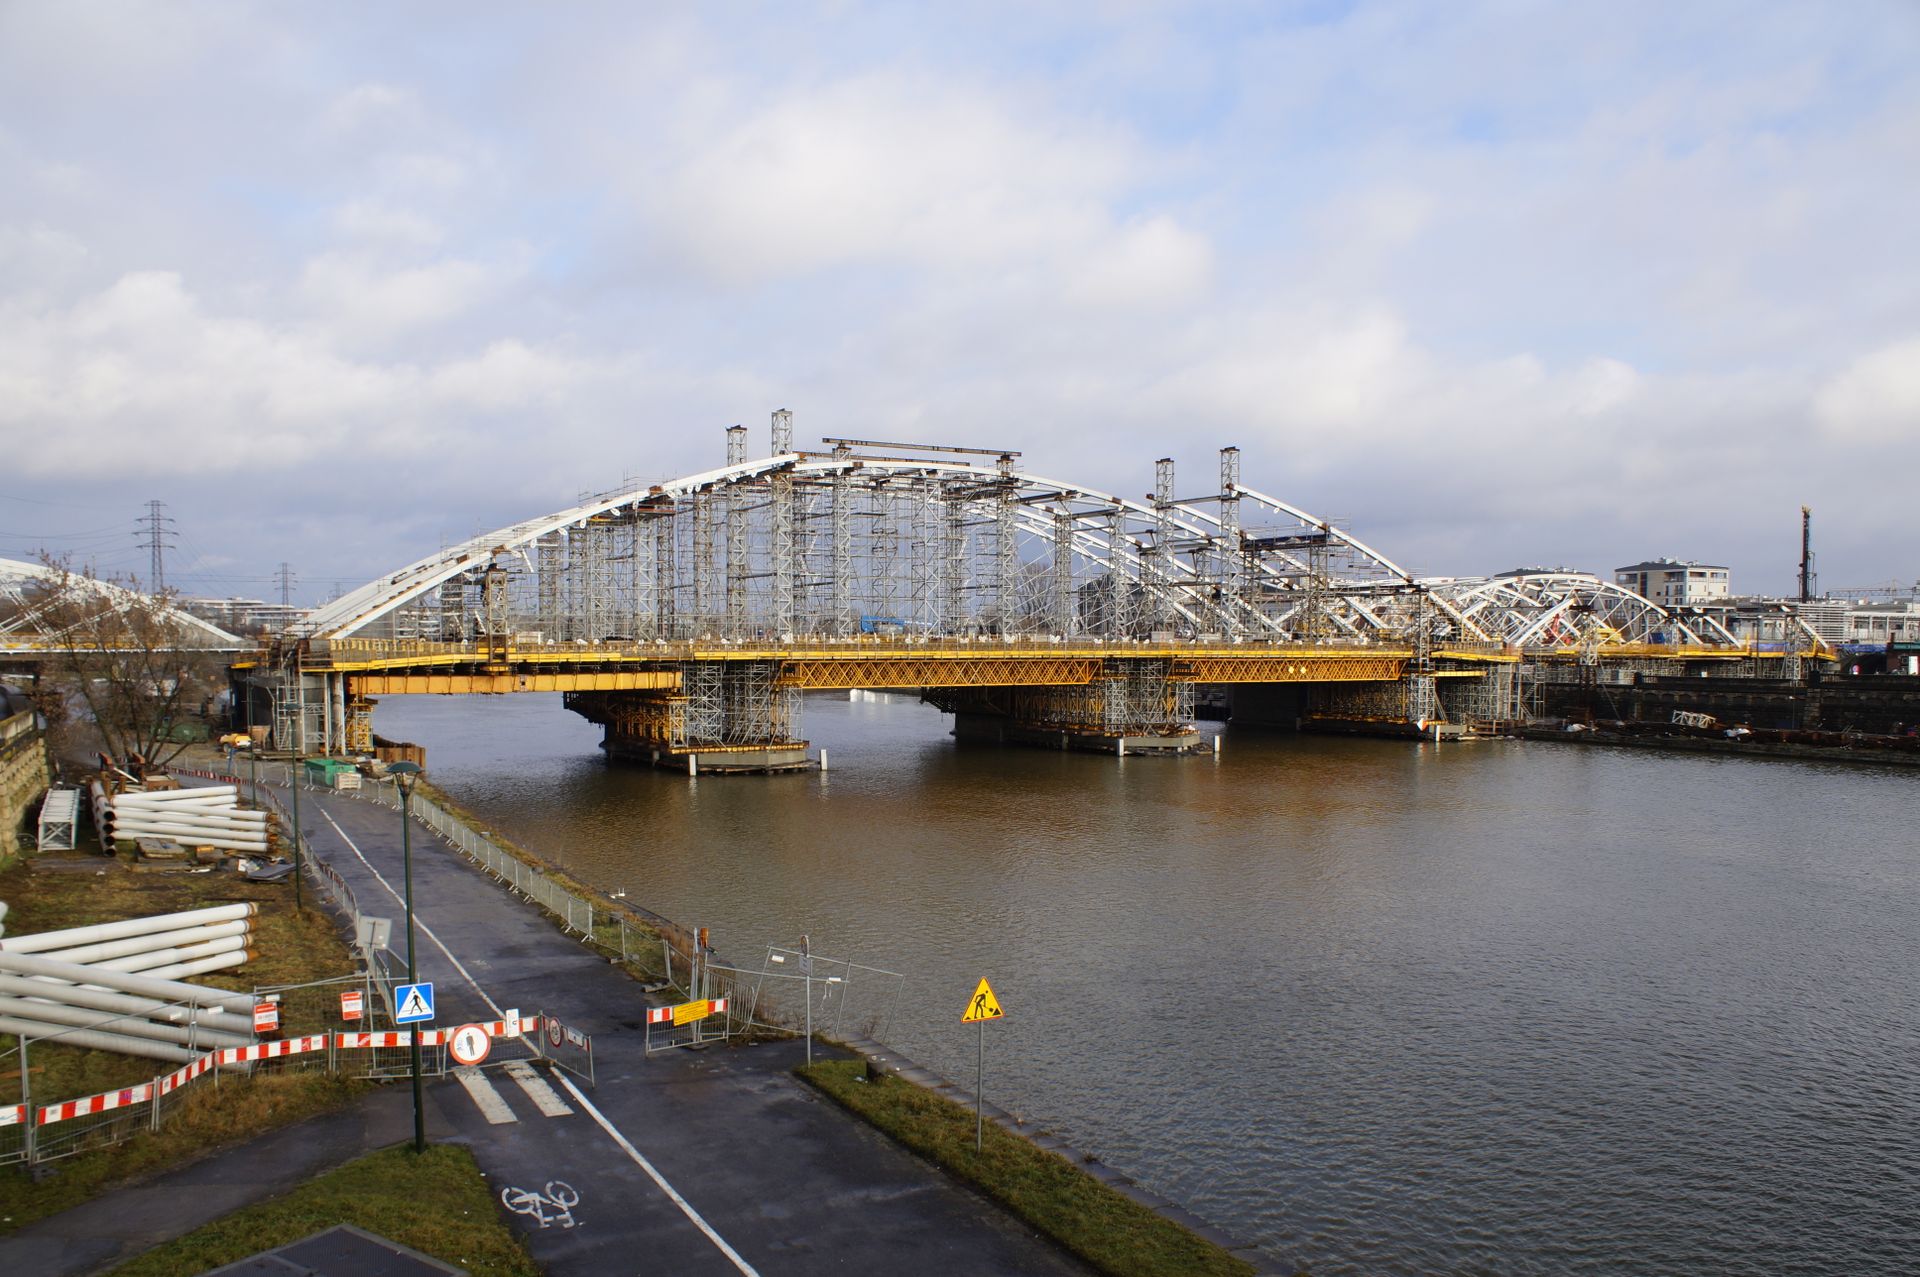 W centrum Krakowa trwa budowa pieszo-rowerowego mostu kolejowego nad Wisłą [FILM + ZDJĘCIA + WIZUALIZACJE]